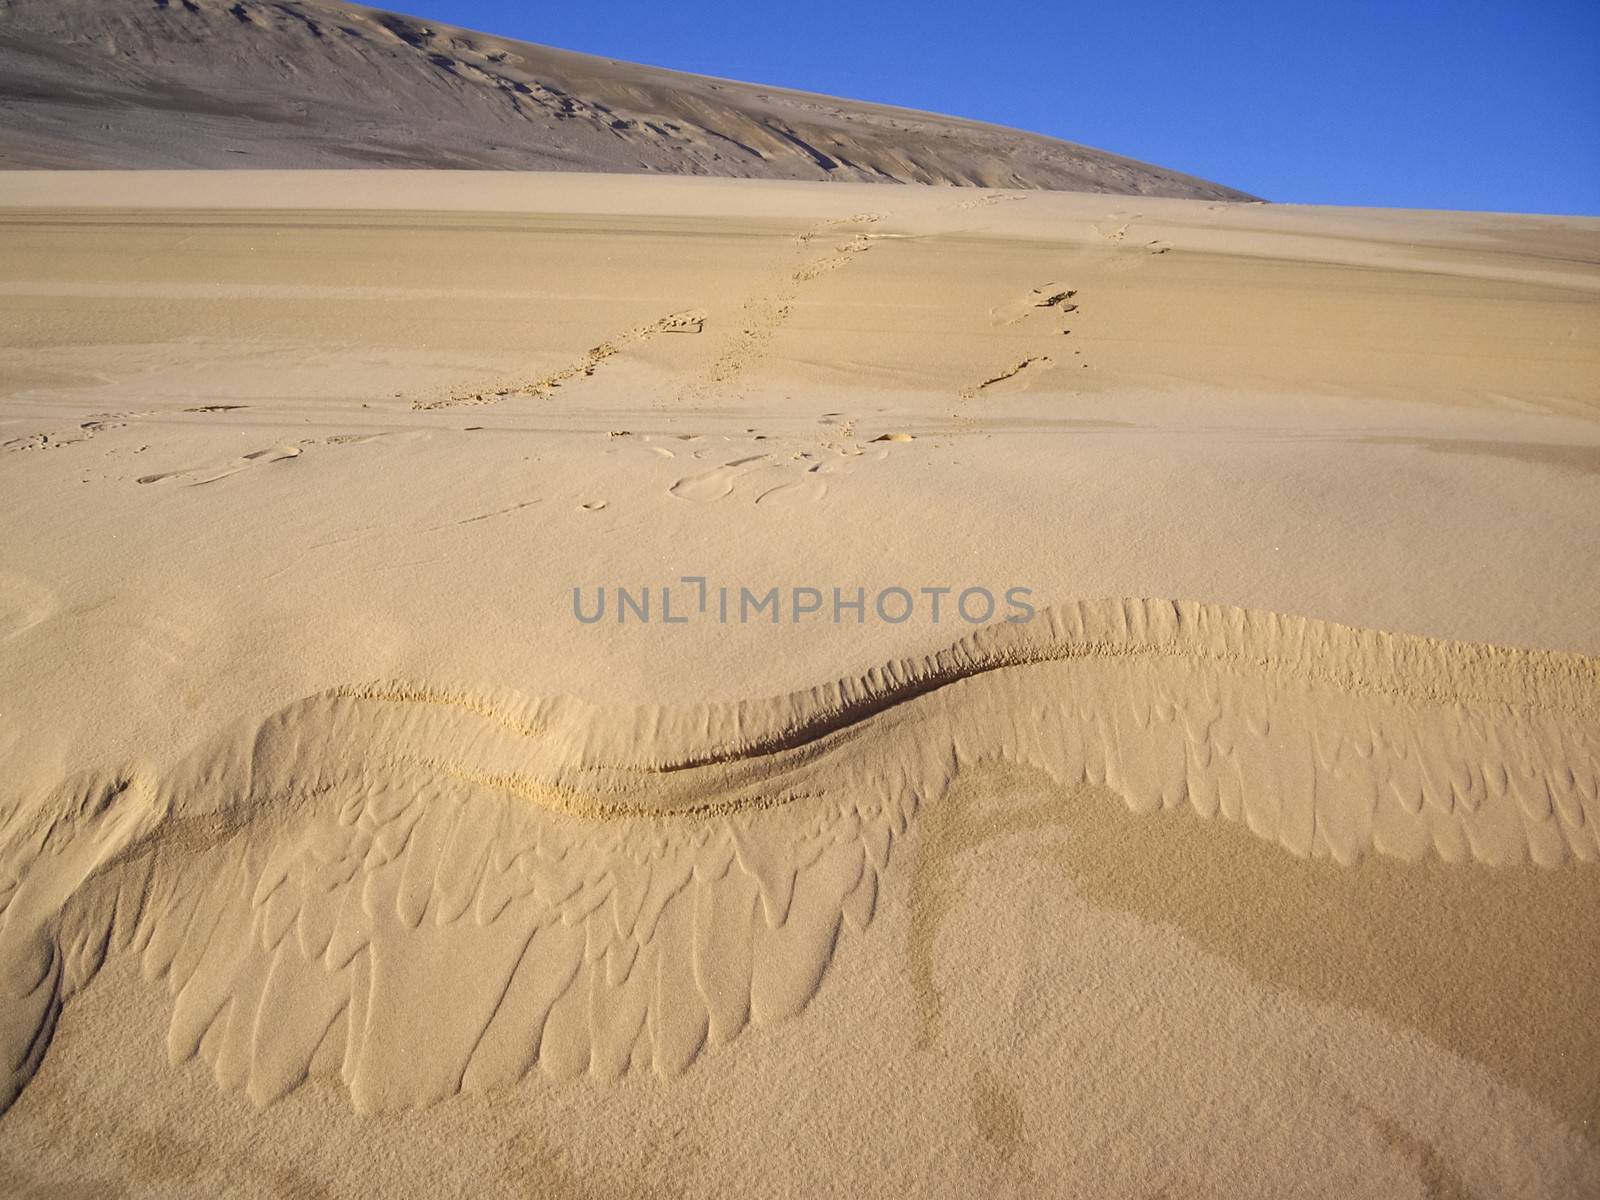 Sliding Sands by emattil